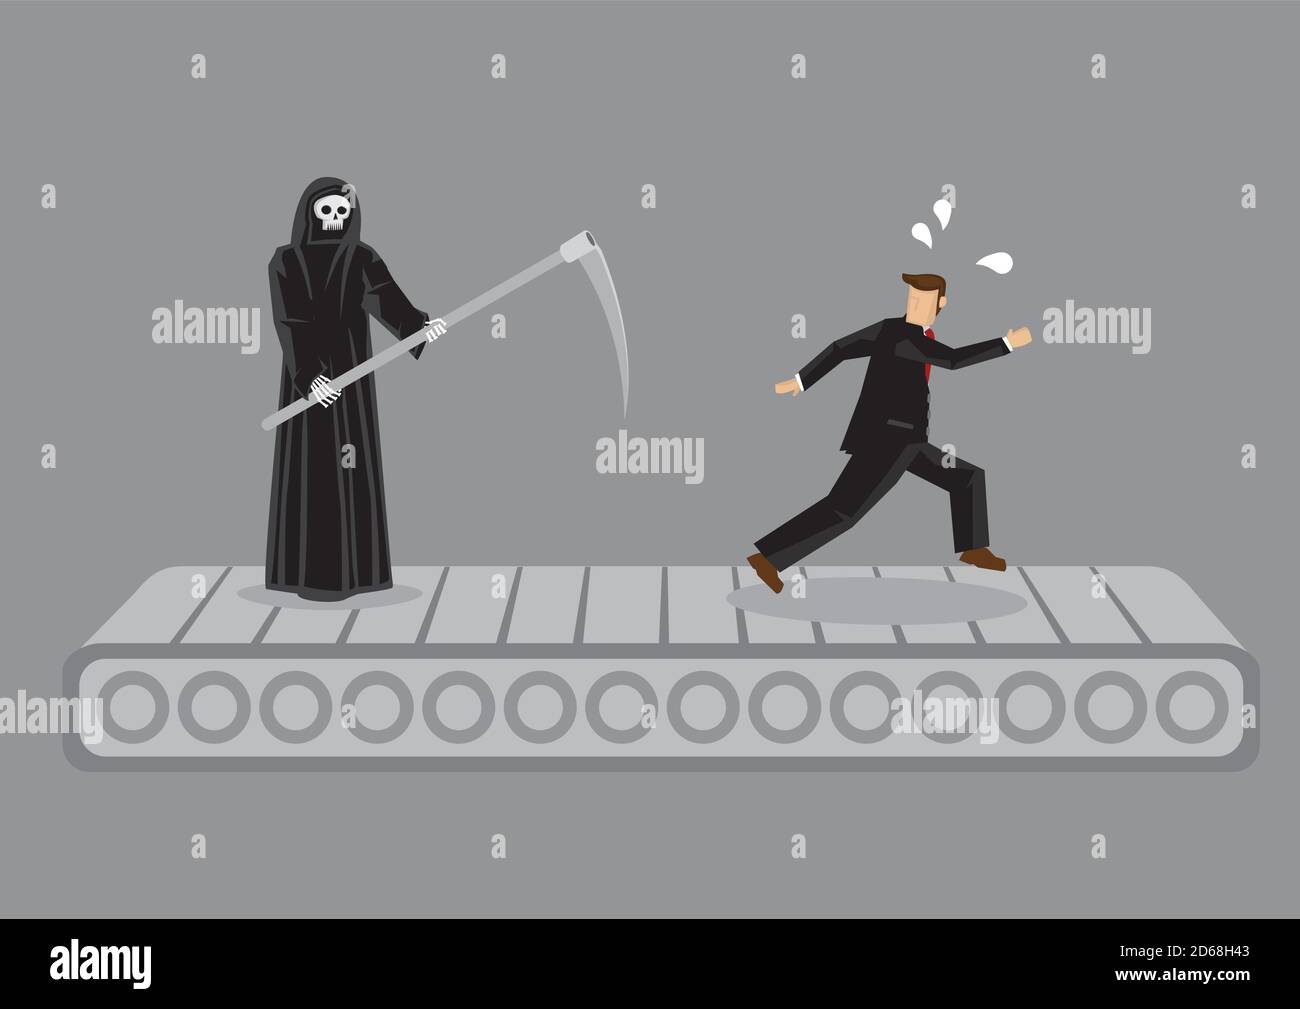 Grim Reaper e uomo di cartone animato che corre sulla pedana mobile. Illustrazione vettoriale creativa sullo sforzo futile per sfuggire alla metafora della morte isolata su sfondo grigio. Illustrazione Vettoriale